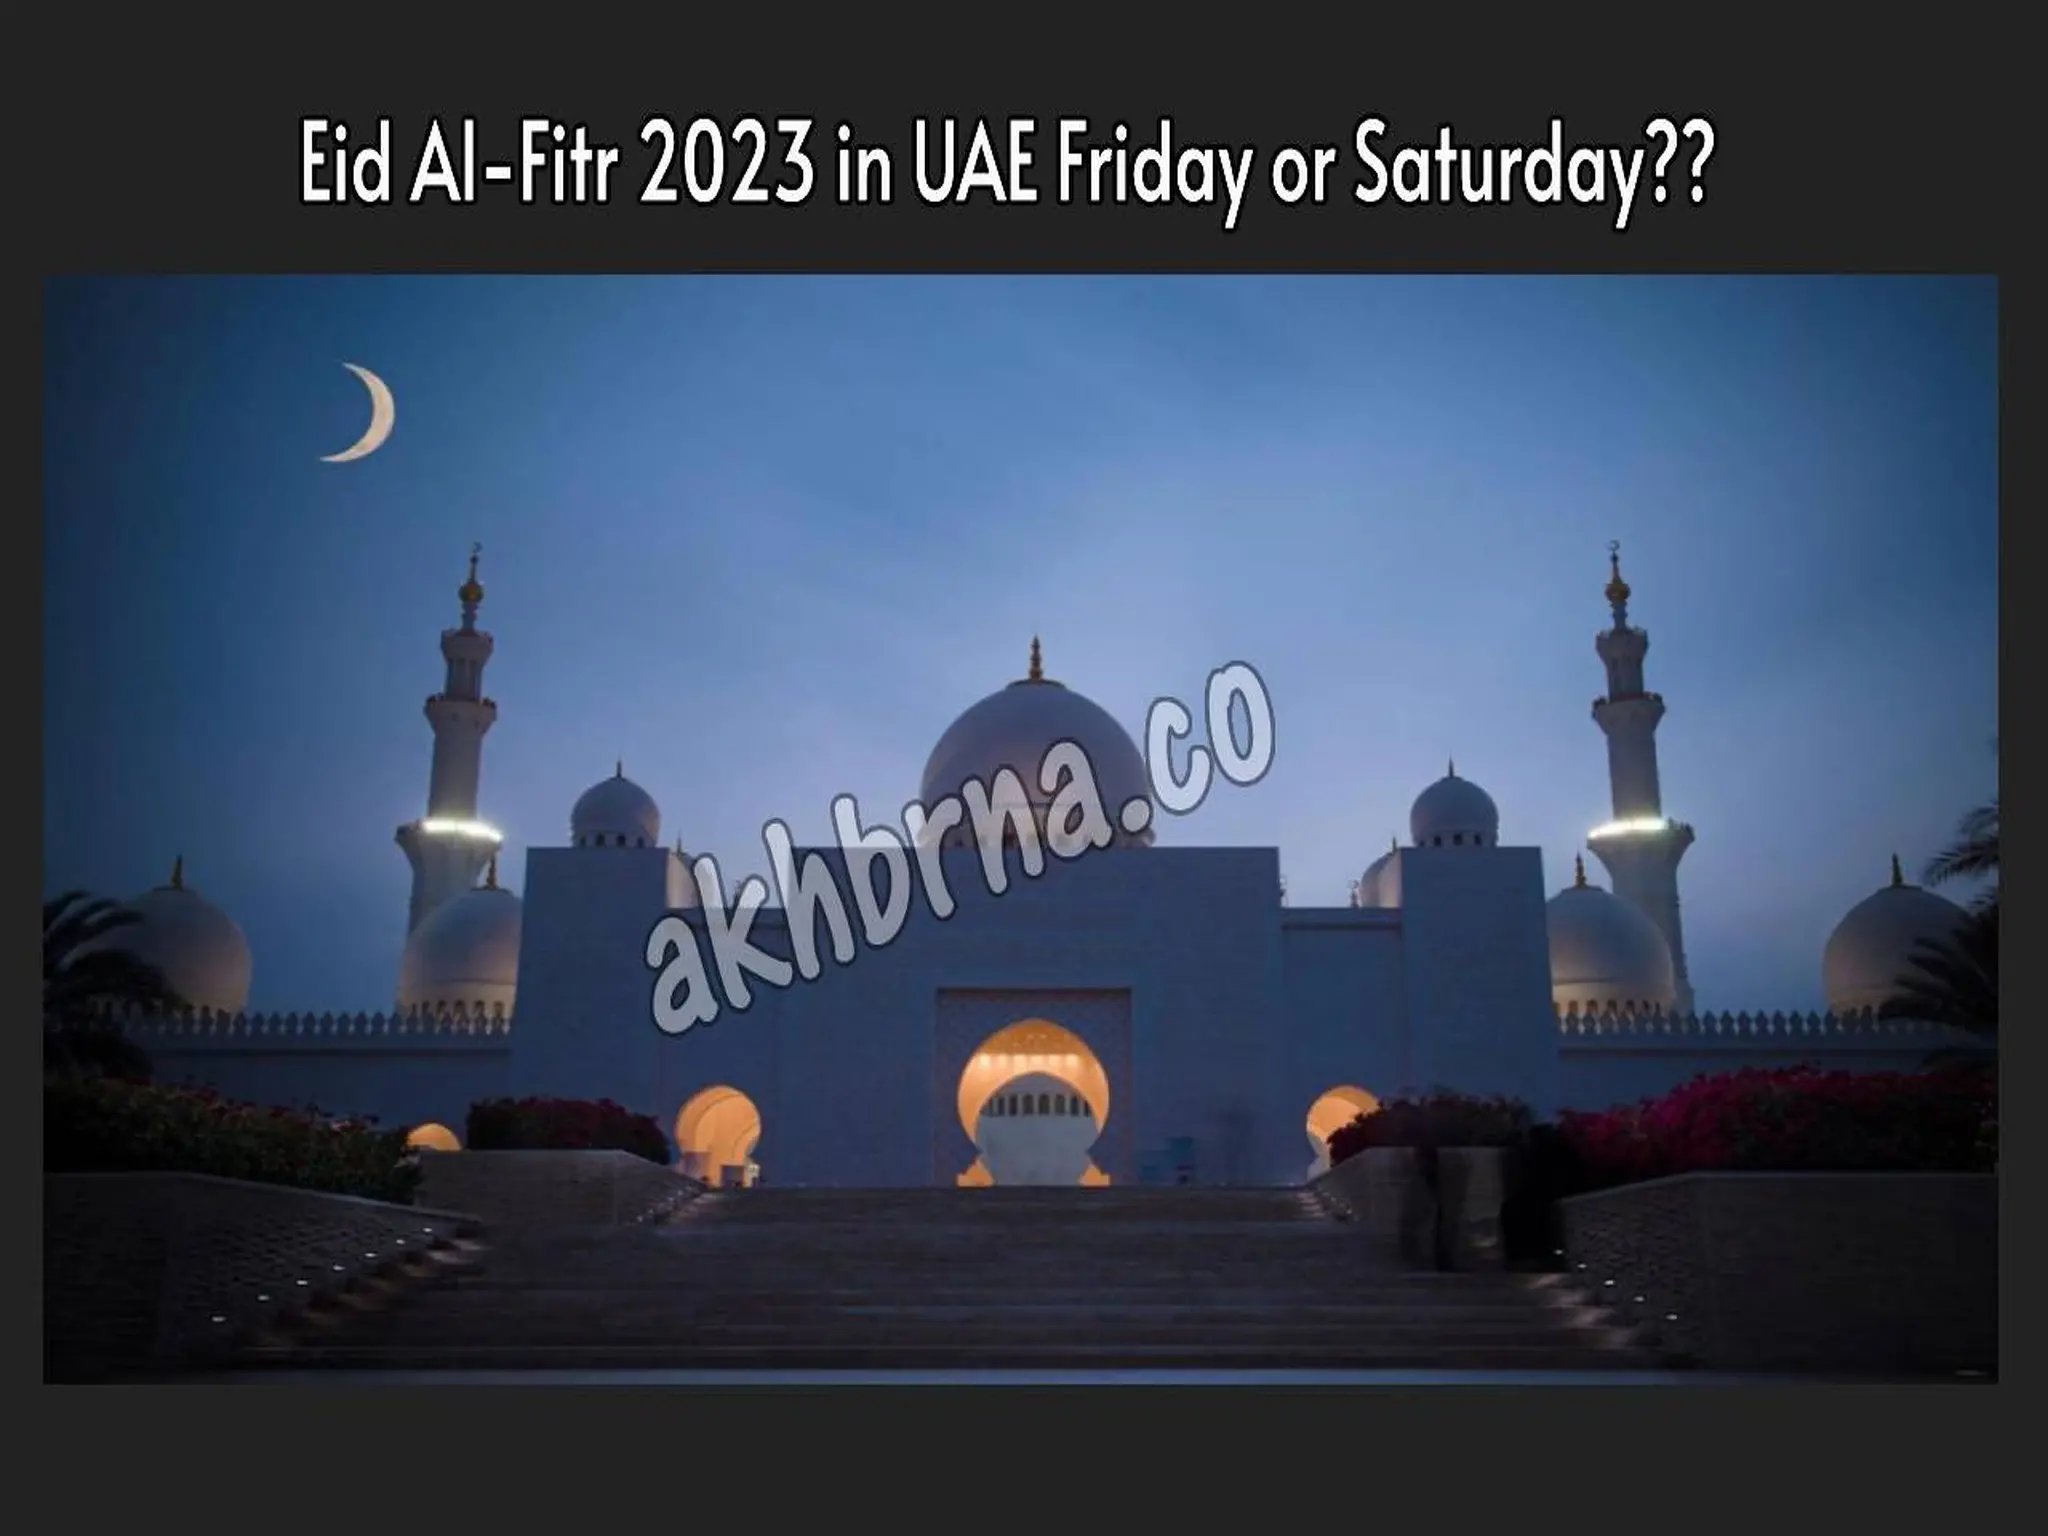 Eid Al-Fitr 2023 in UAE Is it Friday or Saturday?